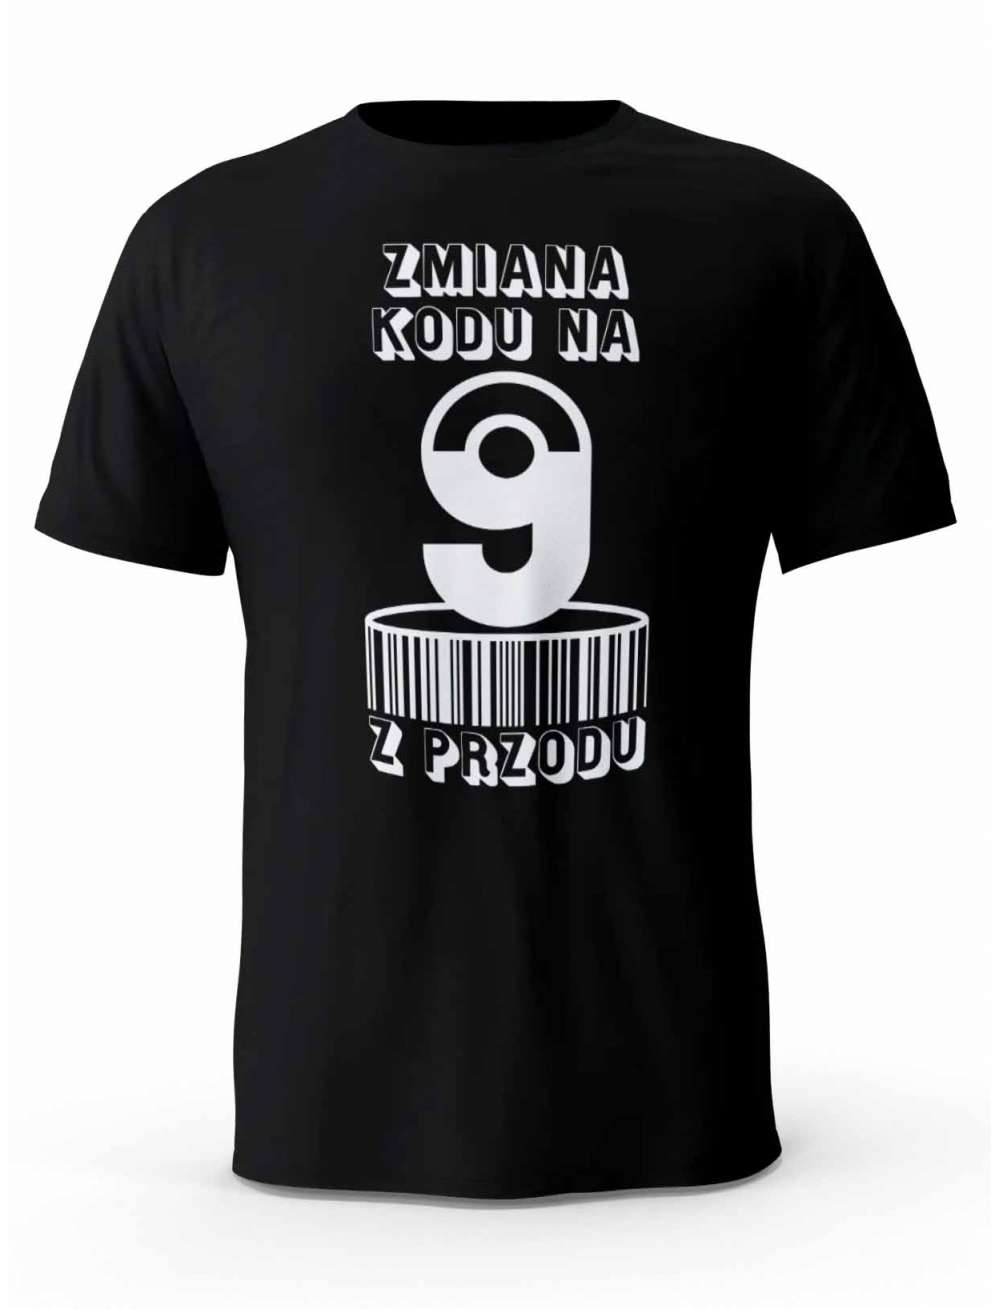 Koszulka Zmiana Kodu na 9 z Przodu, T-shirt Dla Mężczyzny